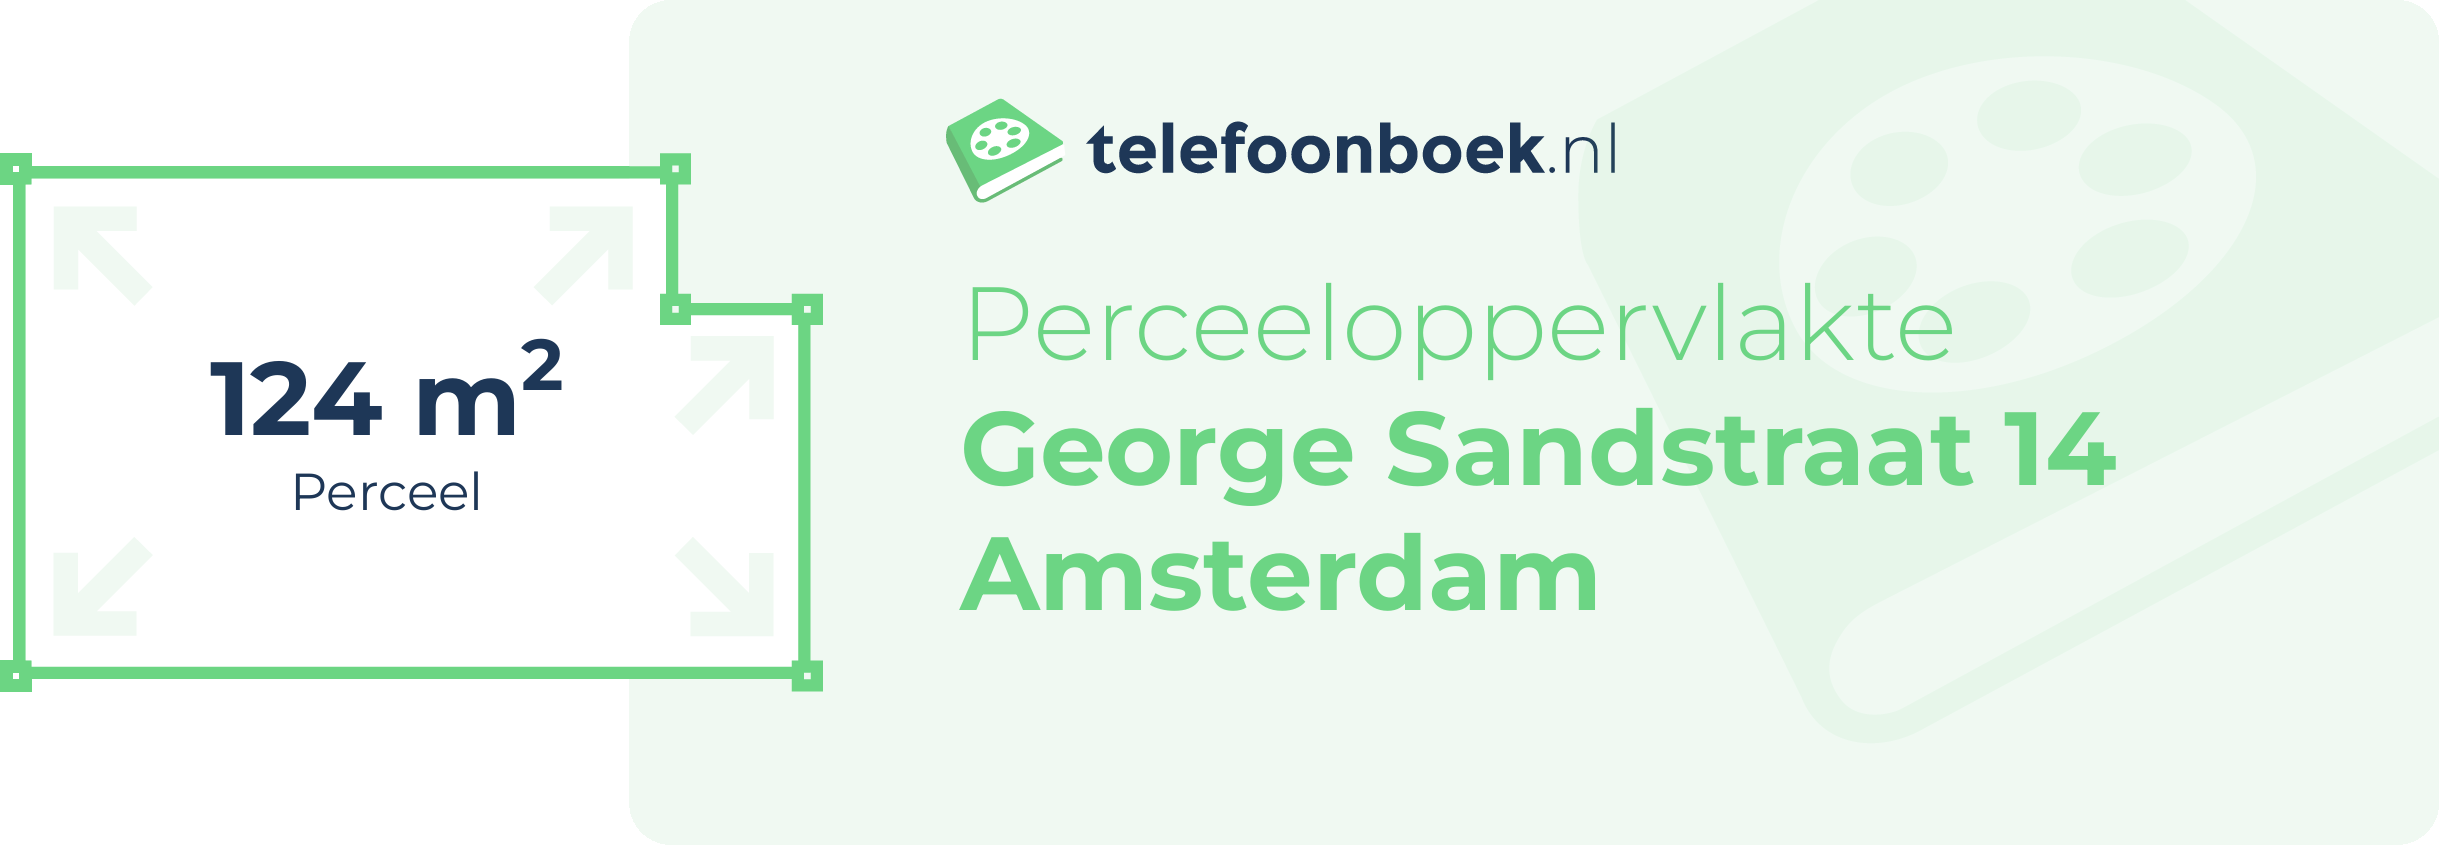 Perceeloppervlakte George Sandstraat 14 Amsterdam